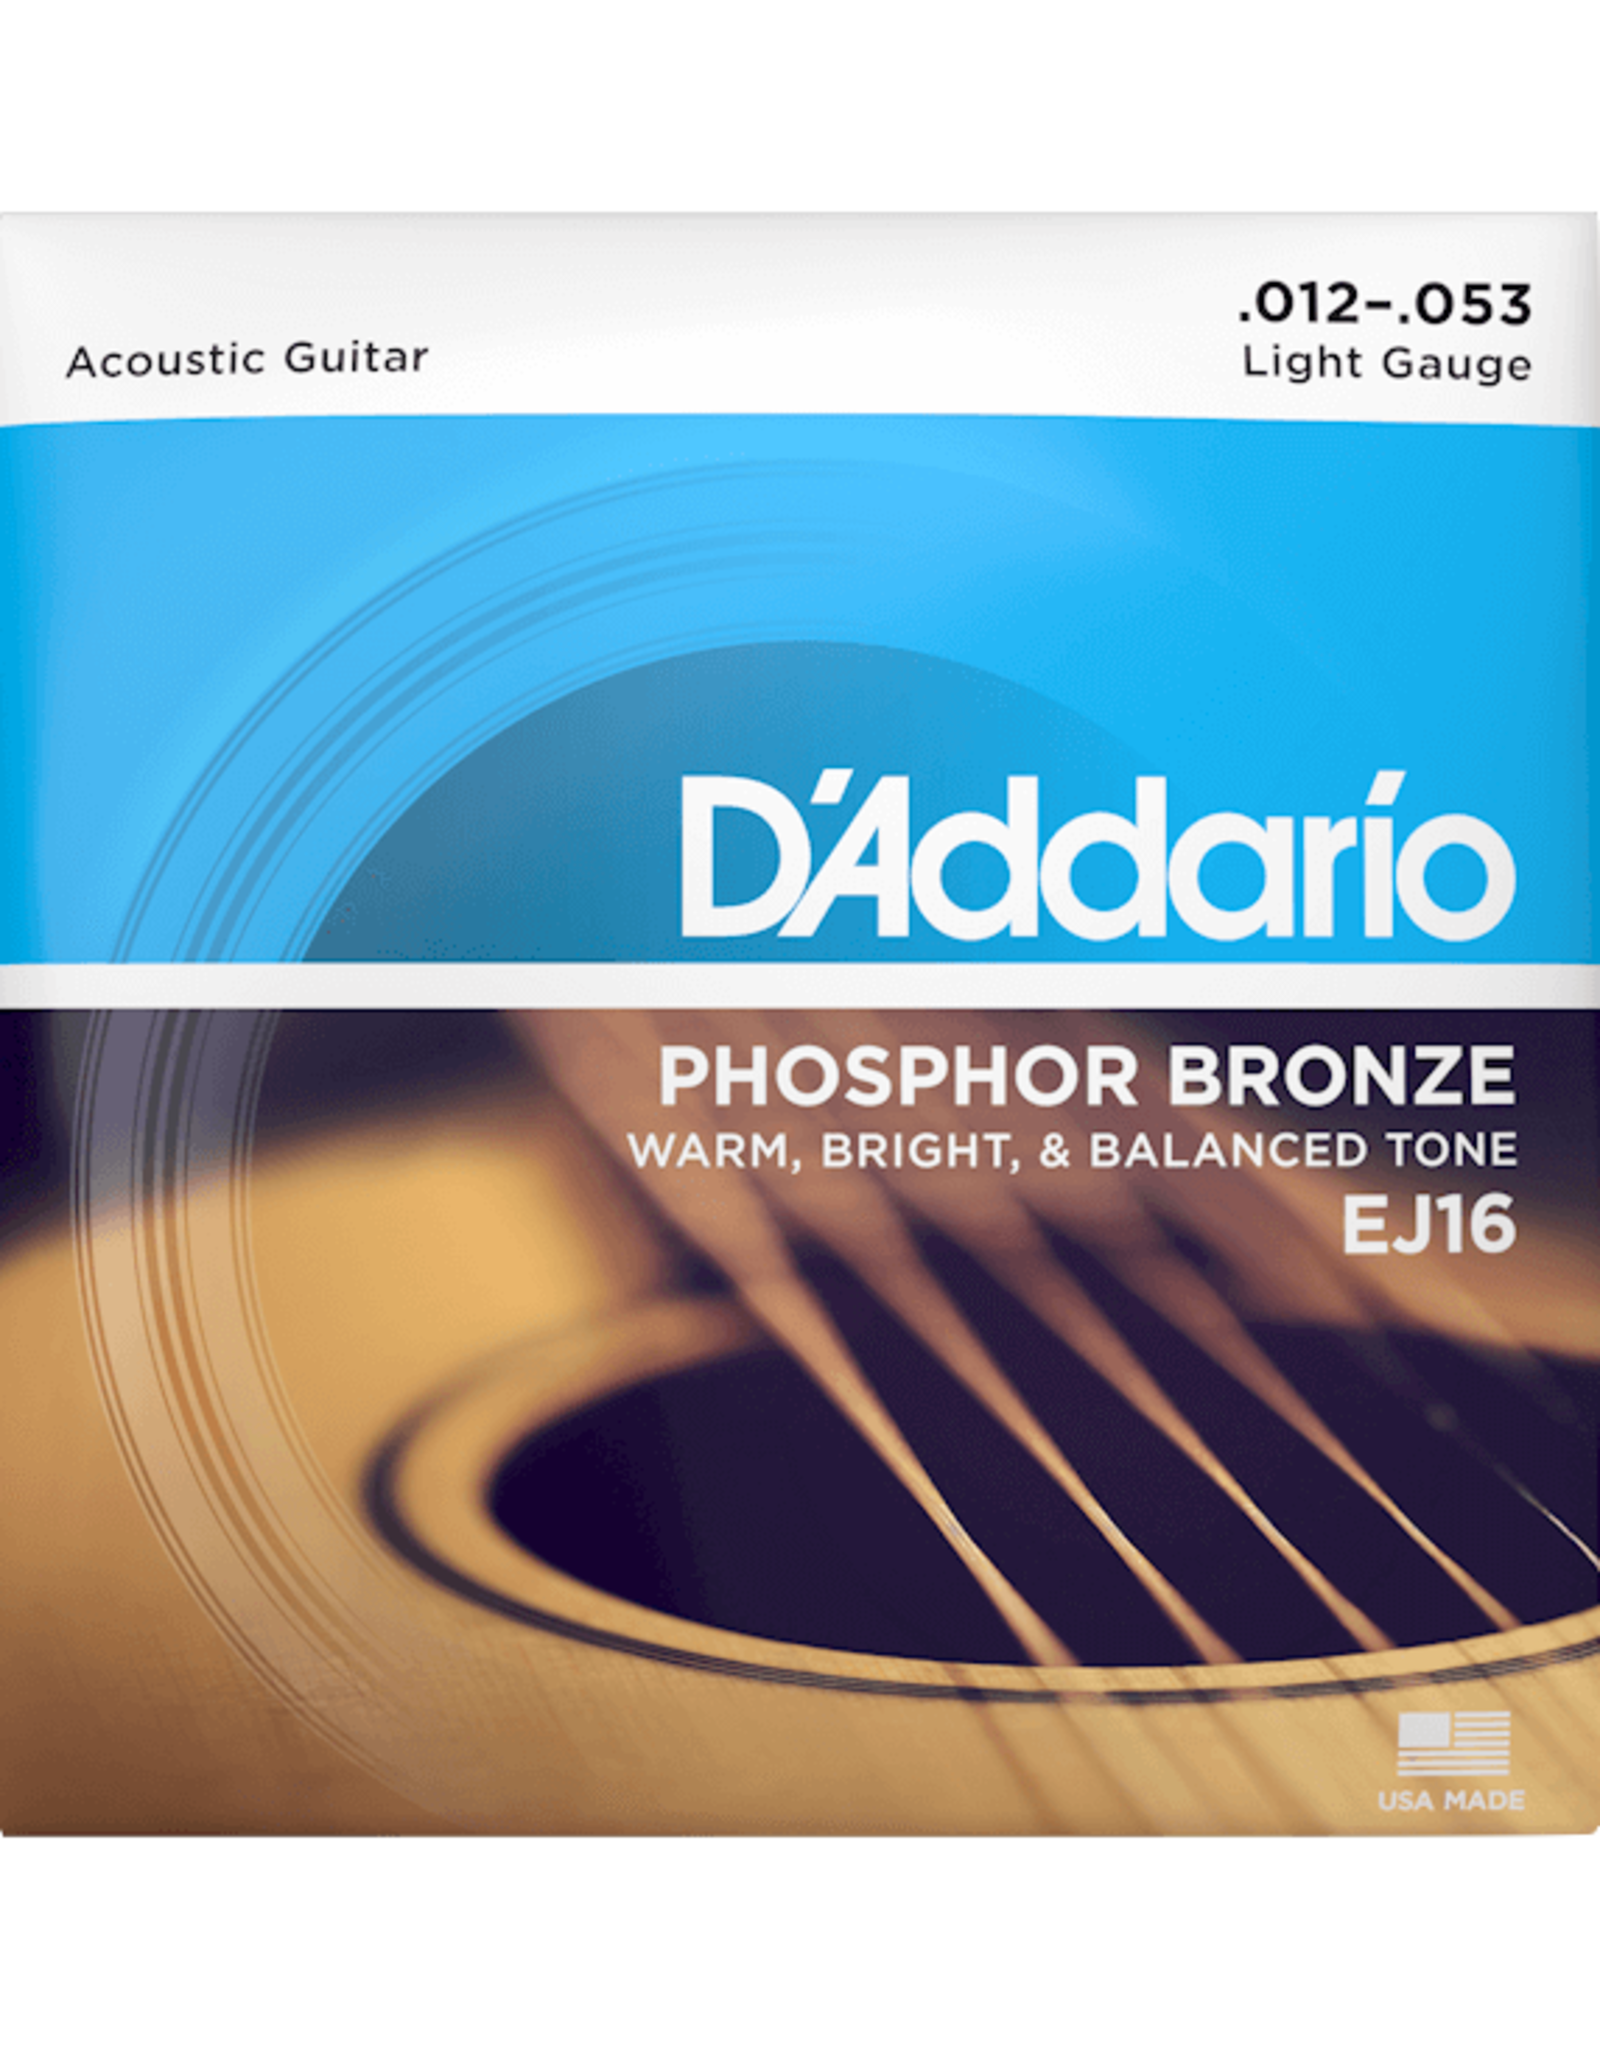 D'Addario D'addario EJ16 Phosphor Bronze Acoustic Guitar Strings Medium 12-53